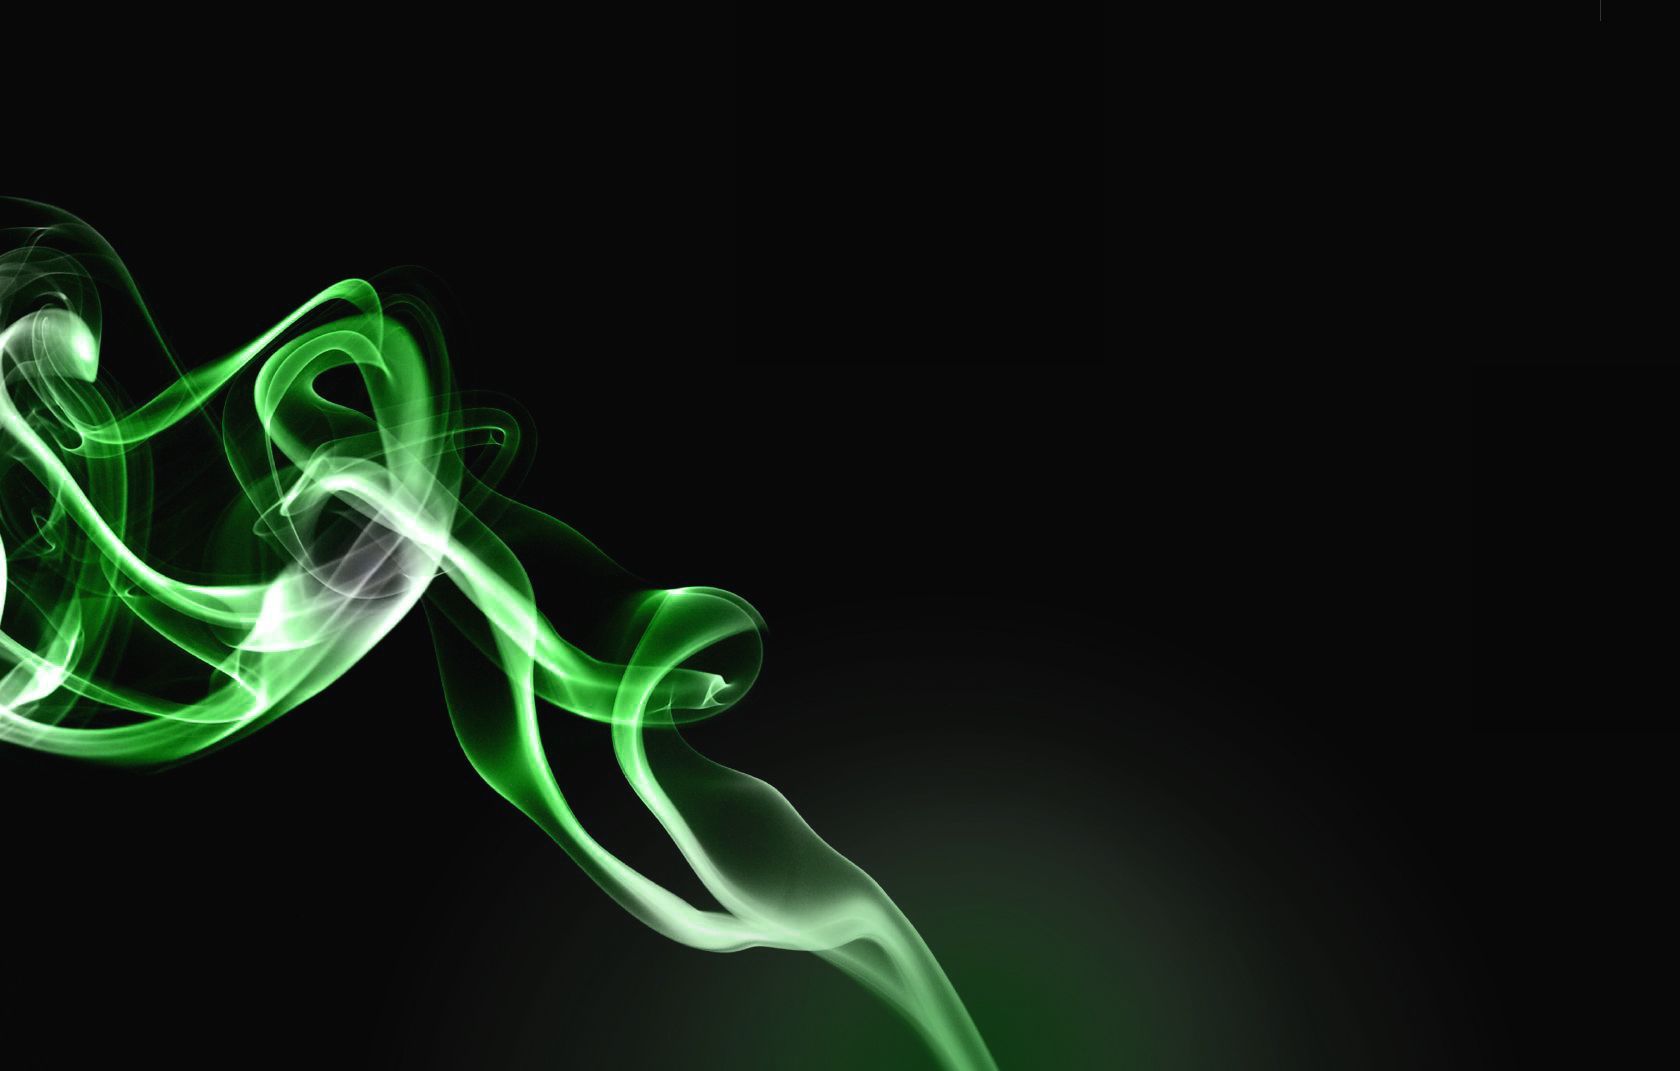 Download texture: green smoke, texture smoke, green smoke texture ...